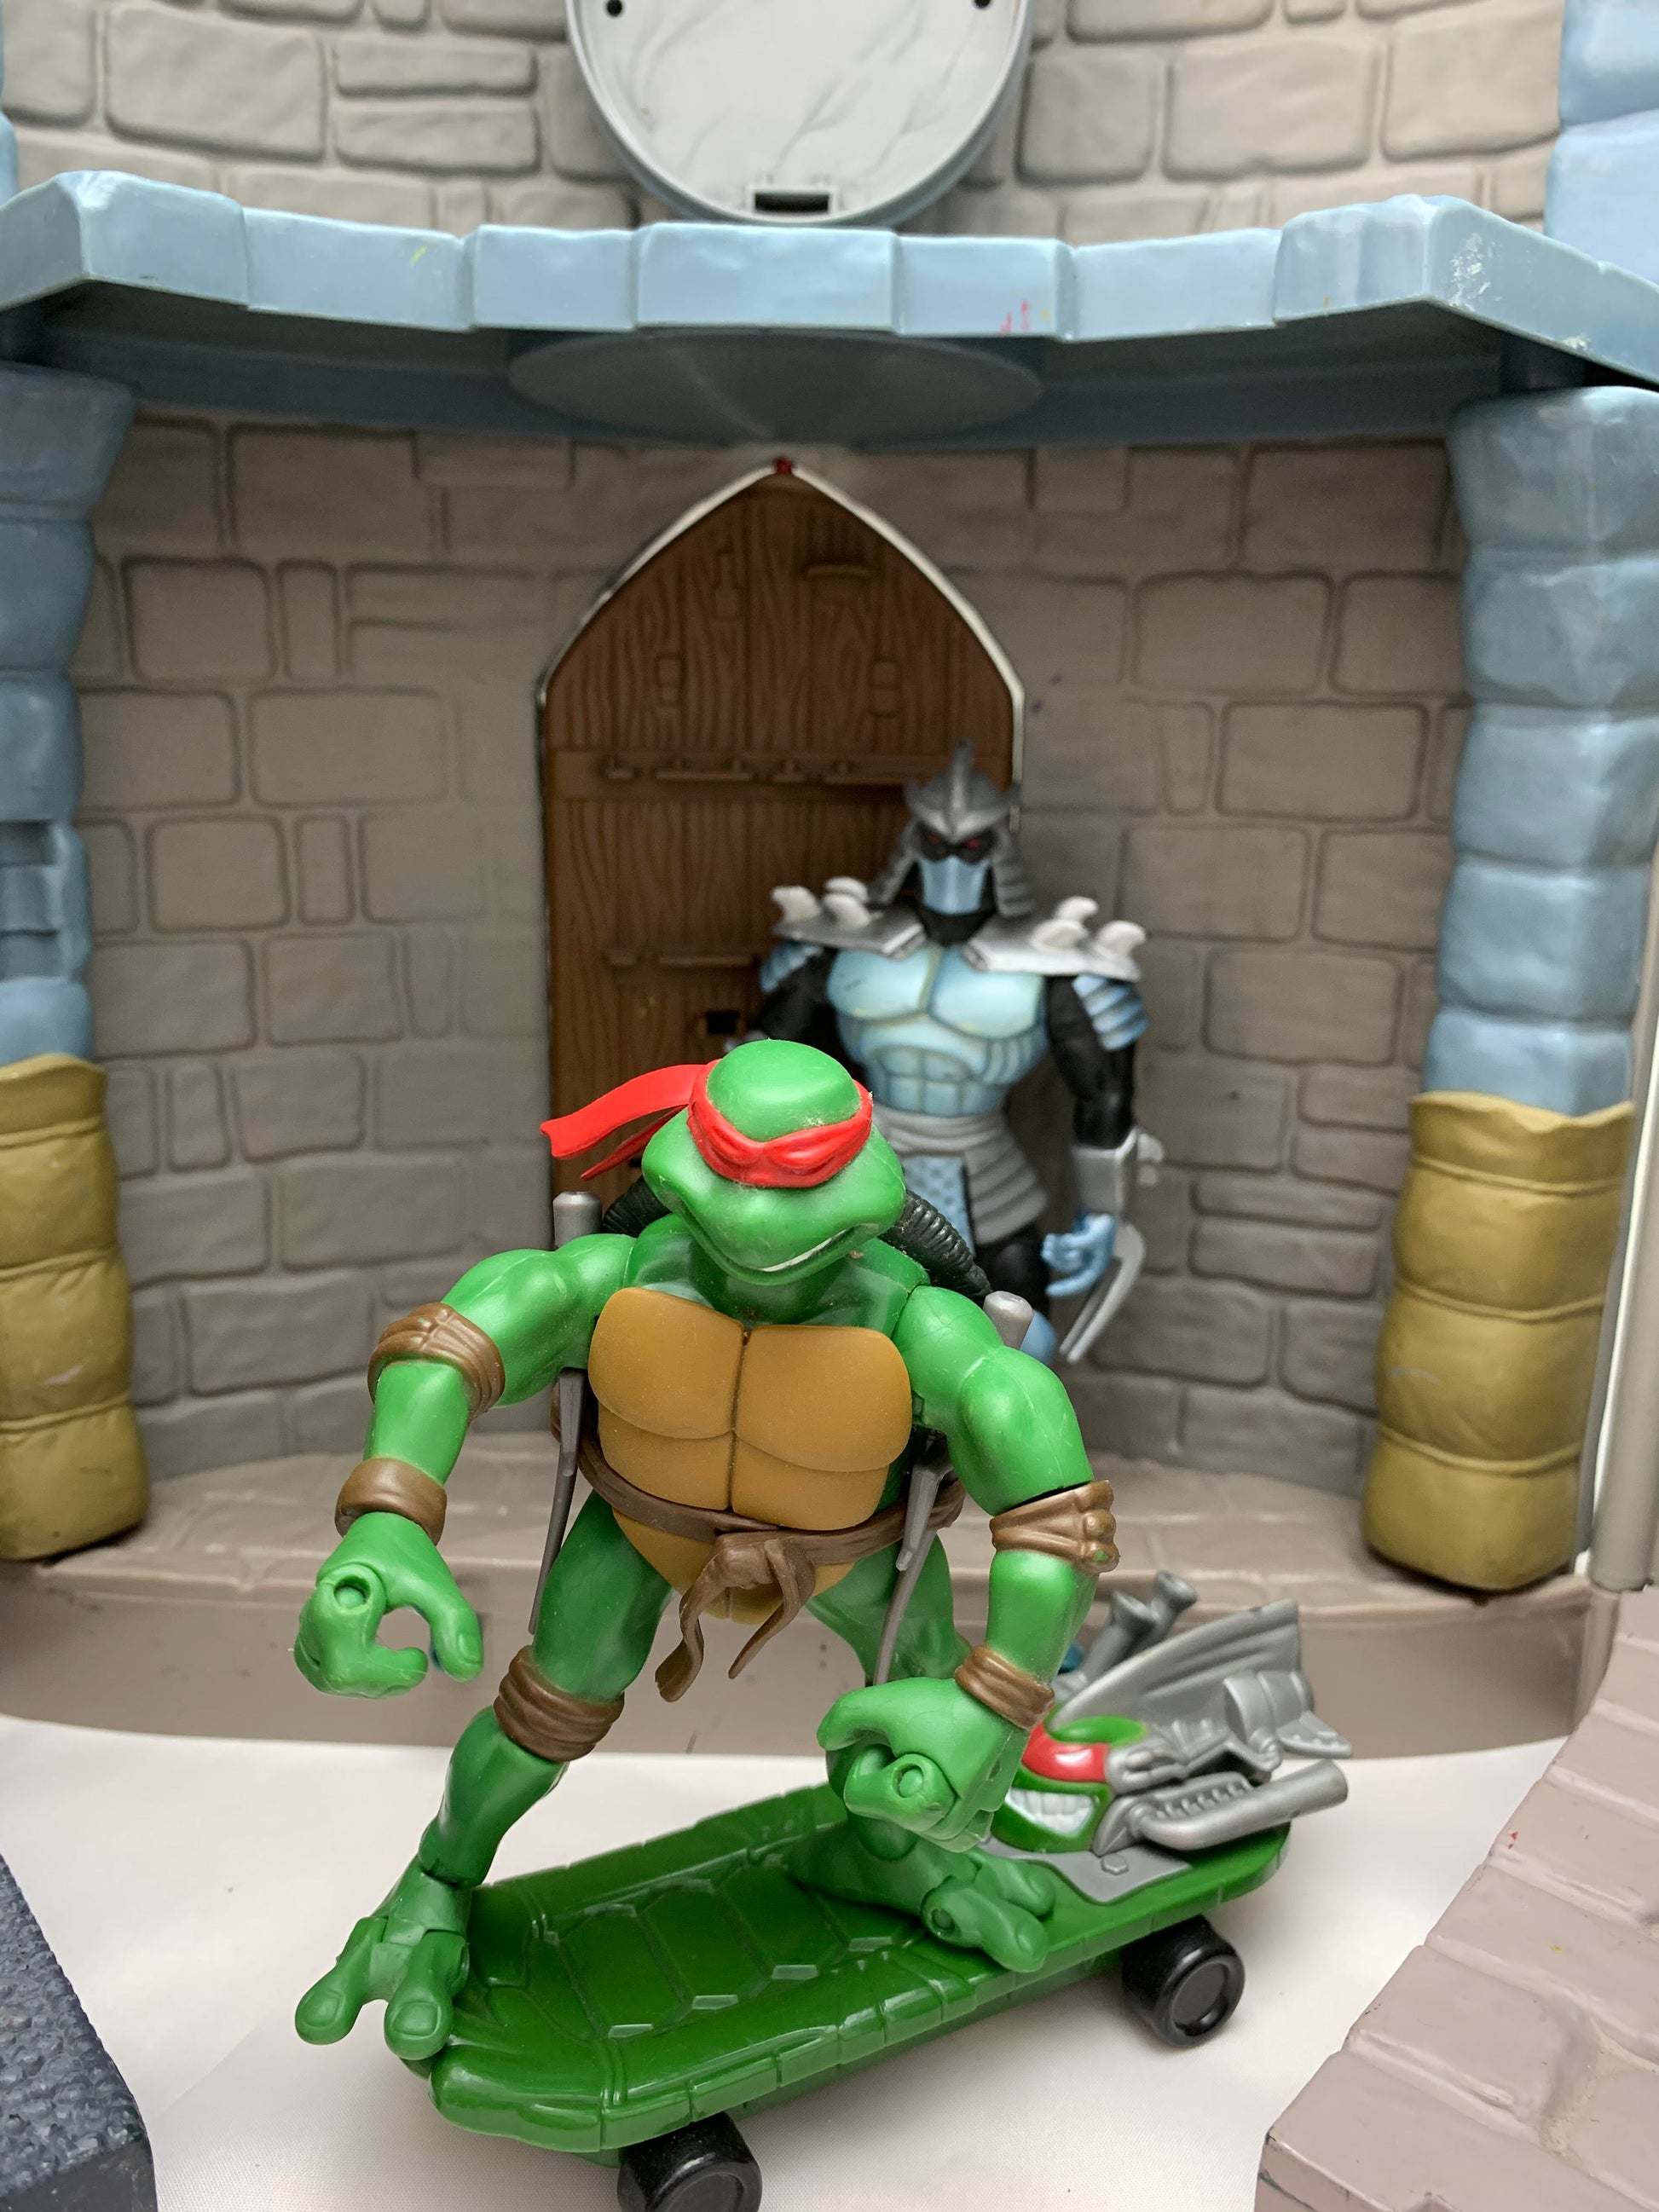 Playmates 2003 Teenage Mutant Ninja Turtles TMNT Sewer Lair Playset no figures - Playset